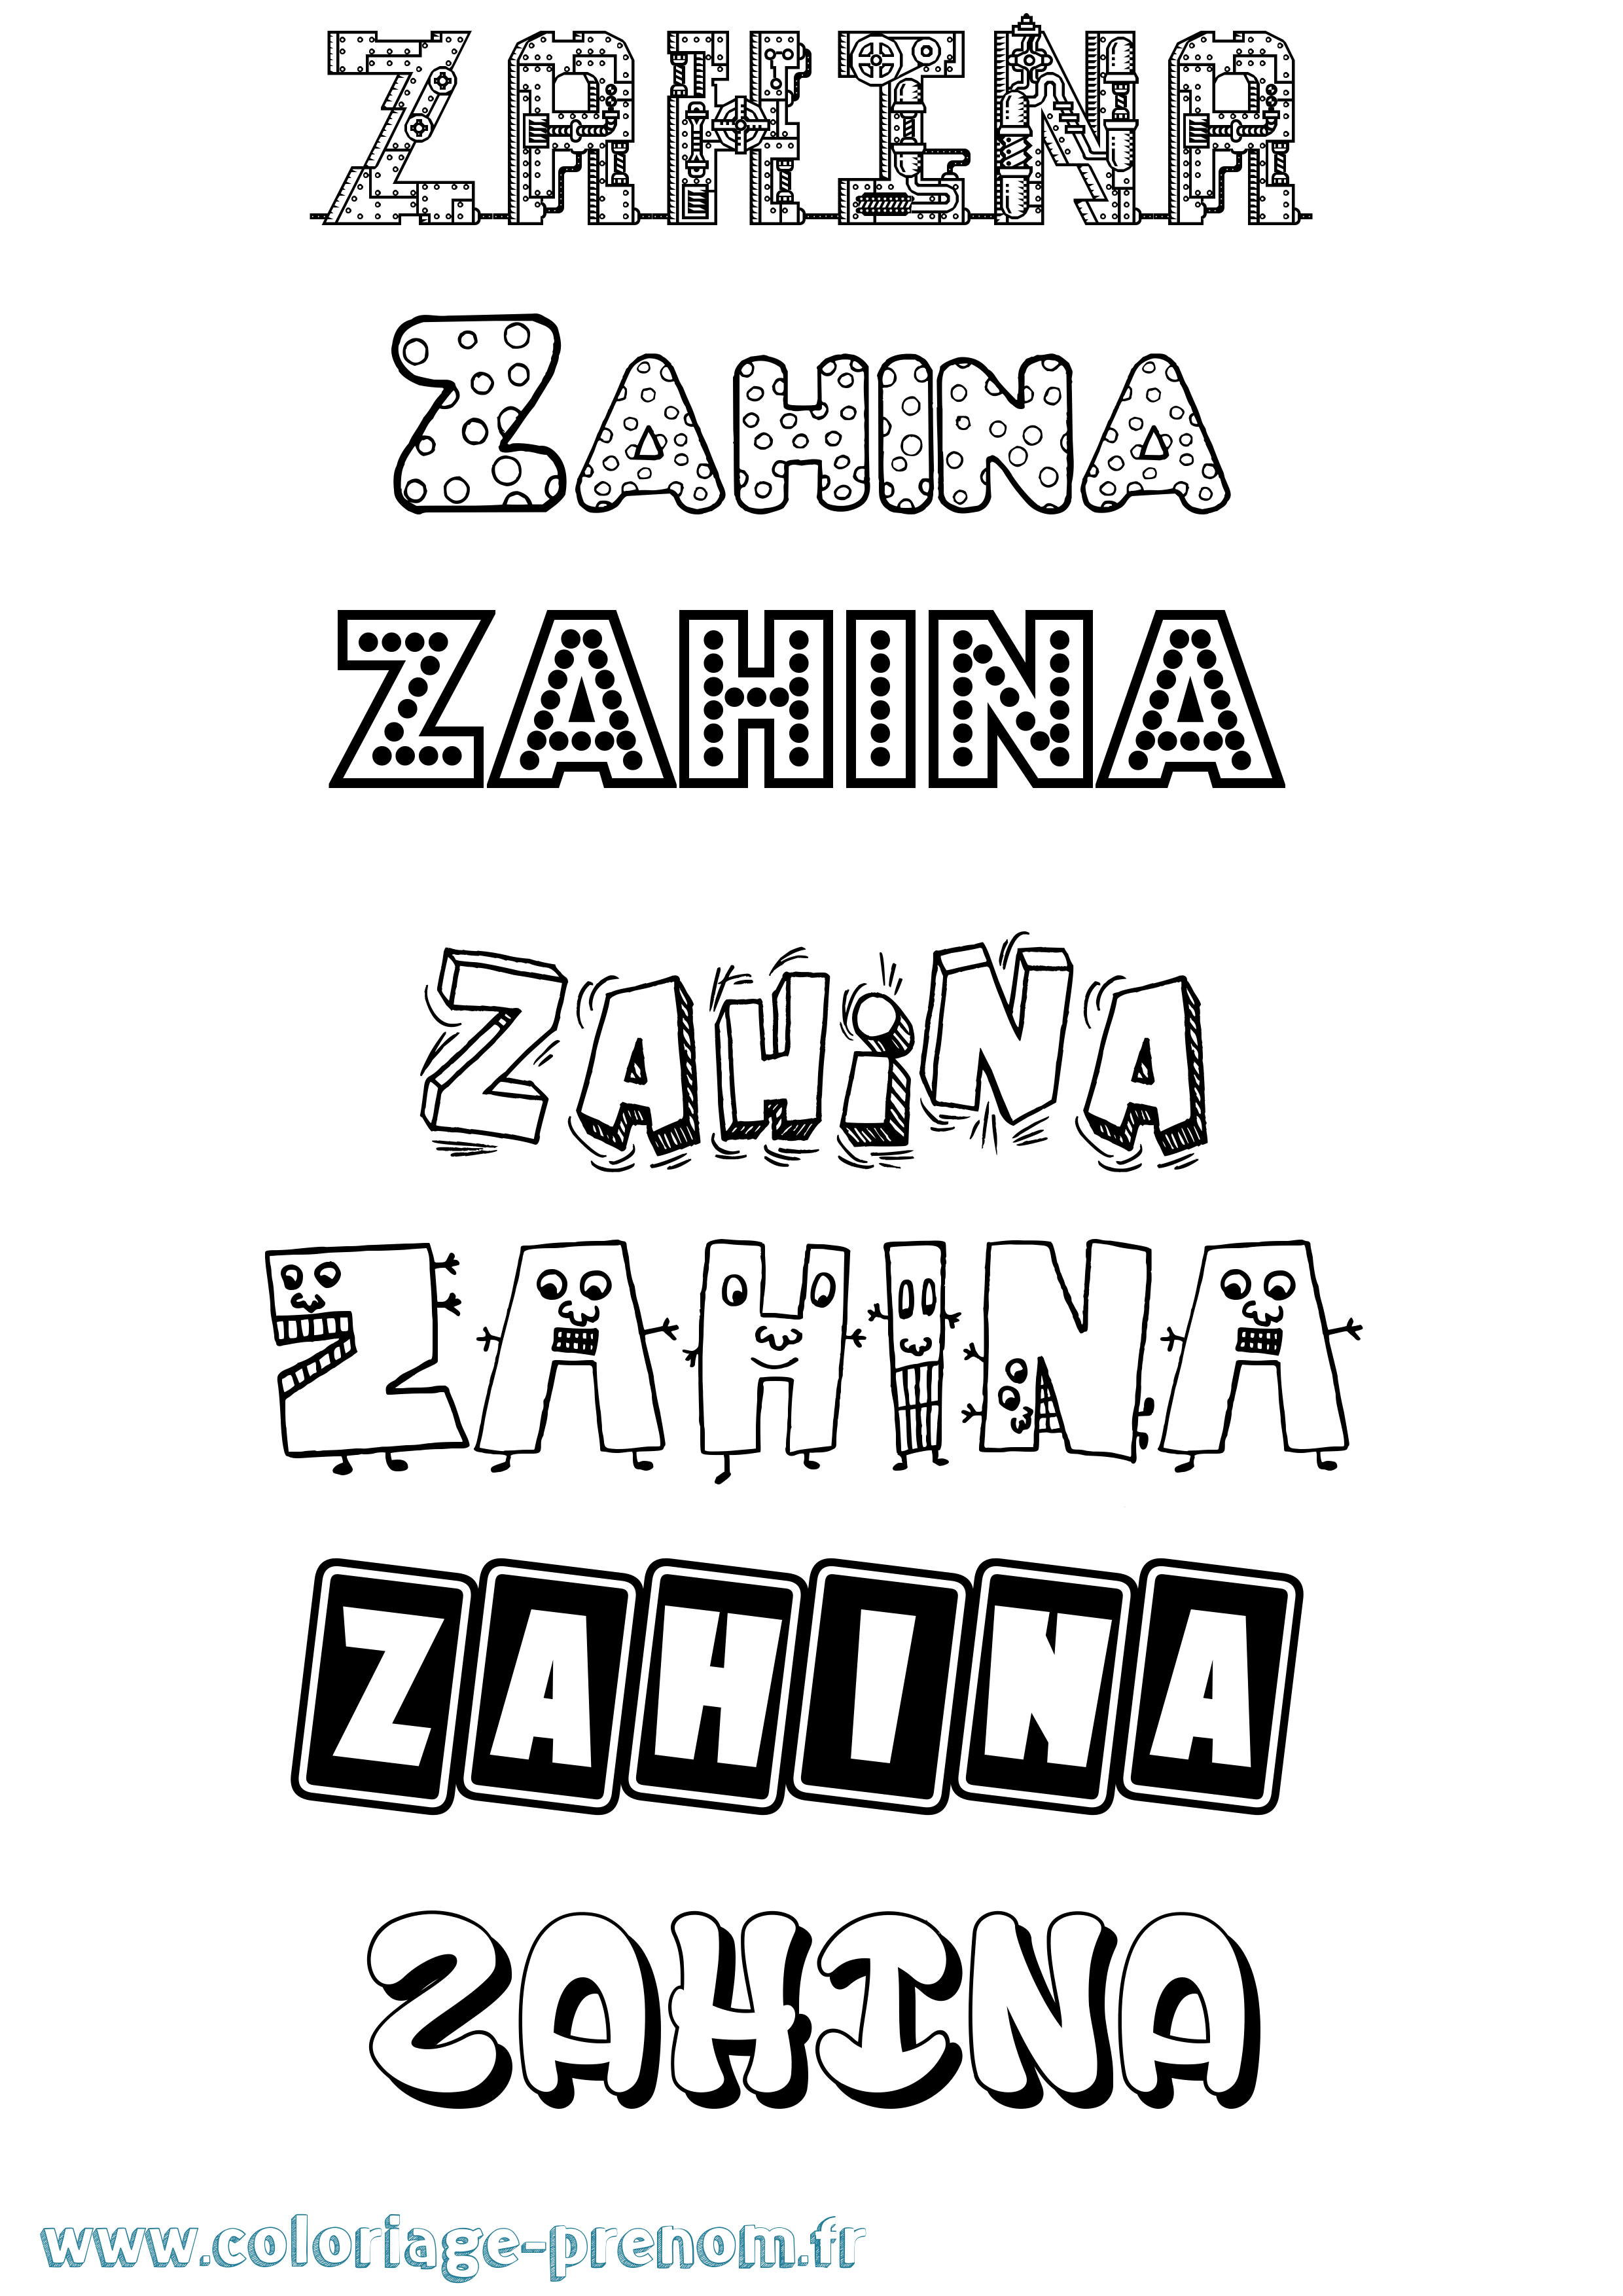 Coloriage prénom Zahina Fun